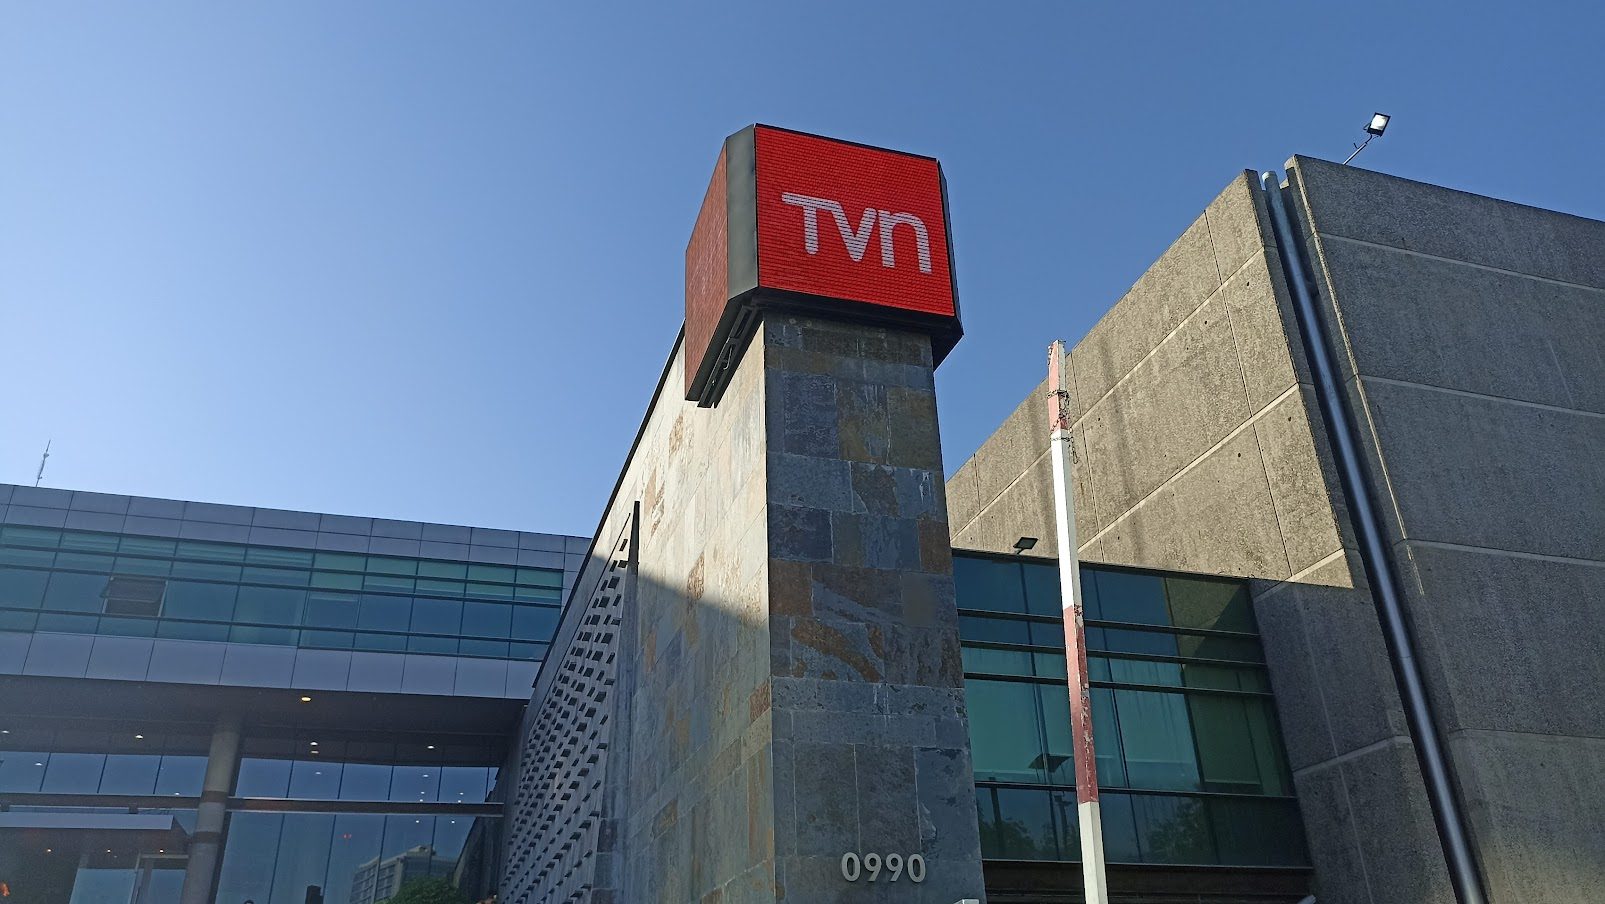 TVN - Televisión Nacional